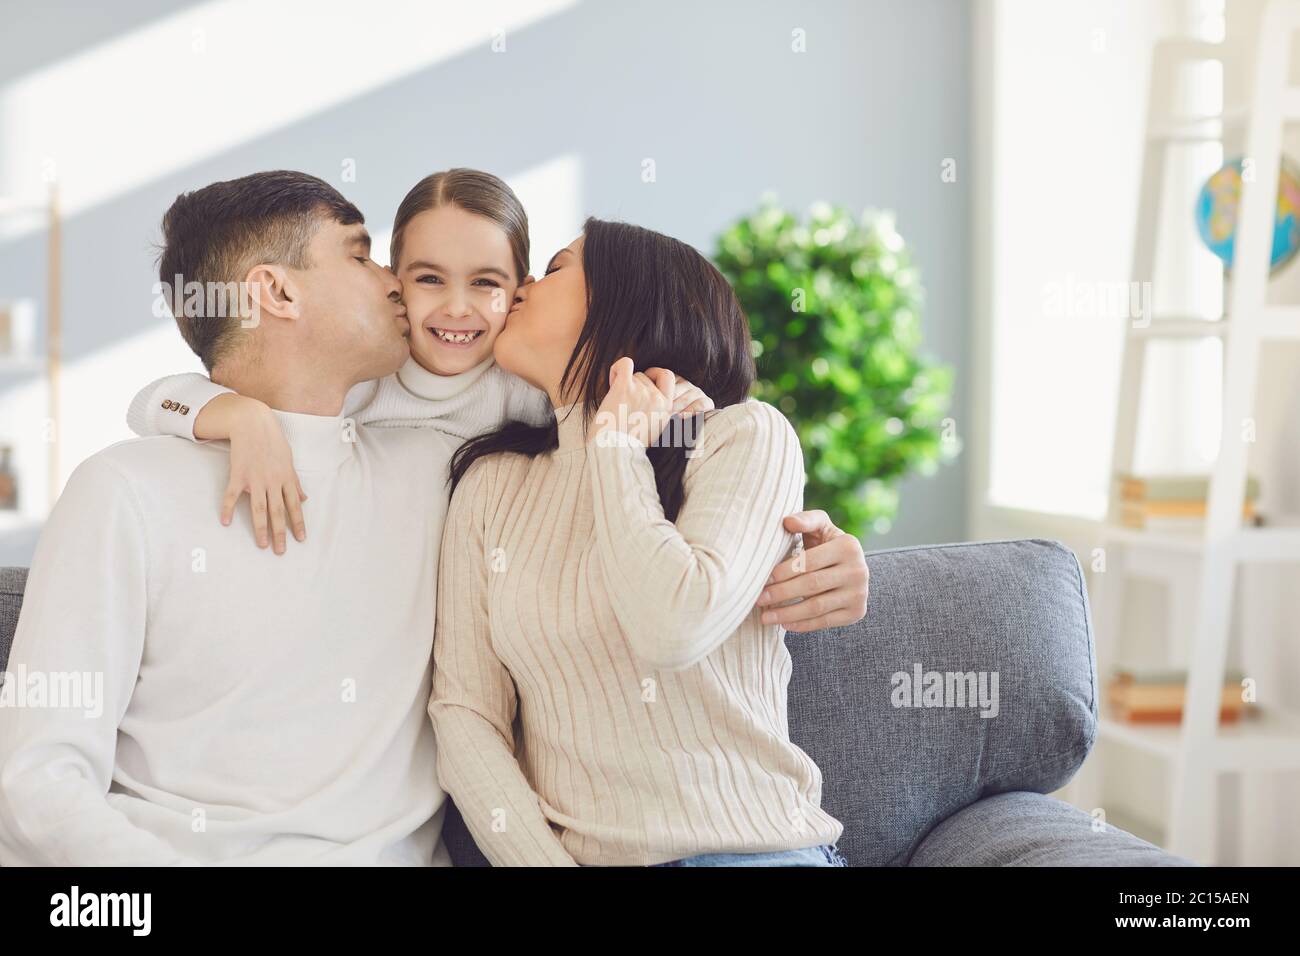 Bonne famille dans la chambre. Mère et père embrassent une fille assise sur un canapé dans une pièce lumineuse et ensoleillée à la maison Banque D'Images